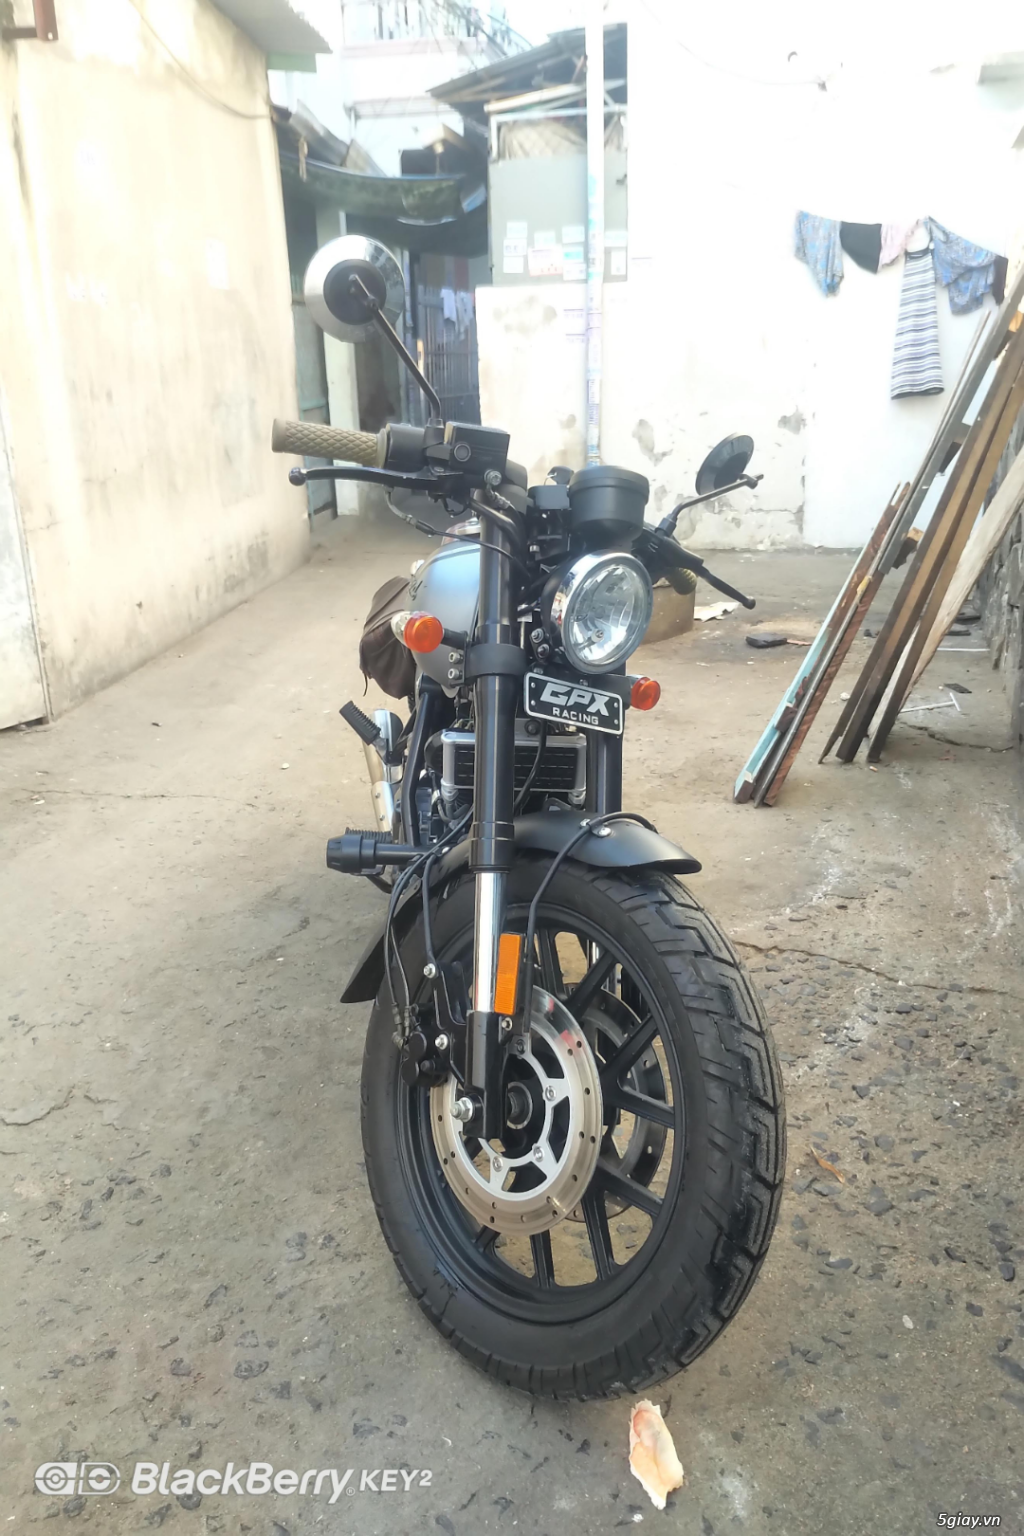 Moto GPX LEGEND 200c trùm mền, ODO 6000km | 5giay